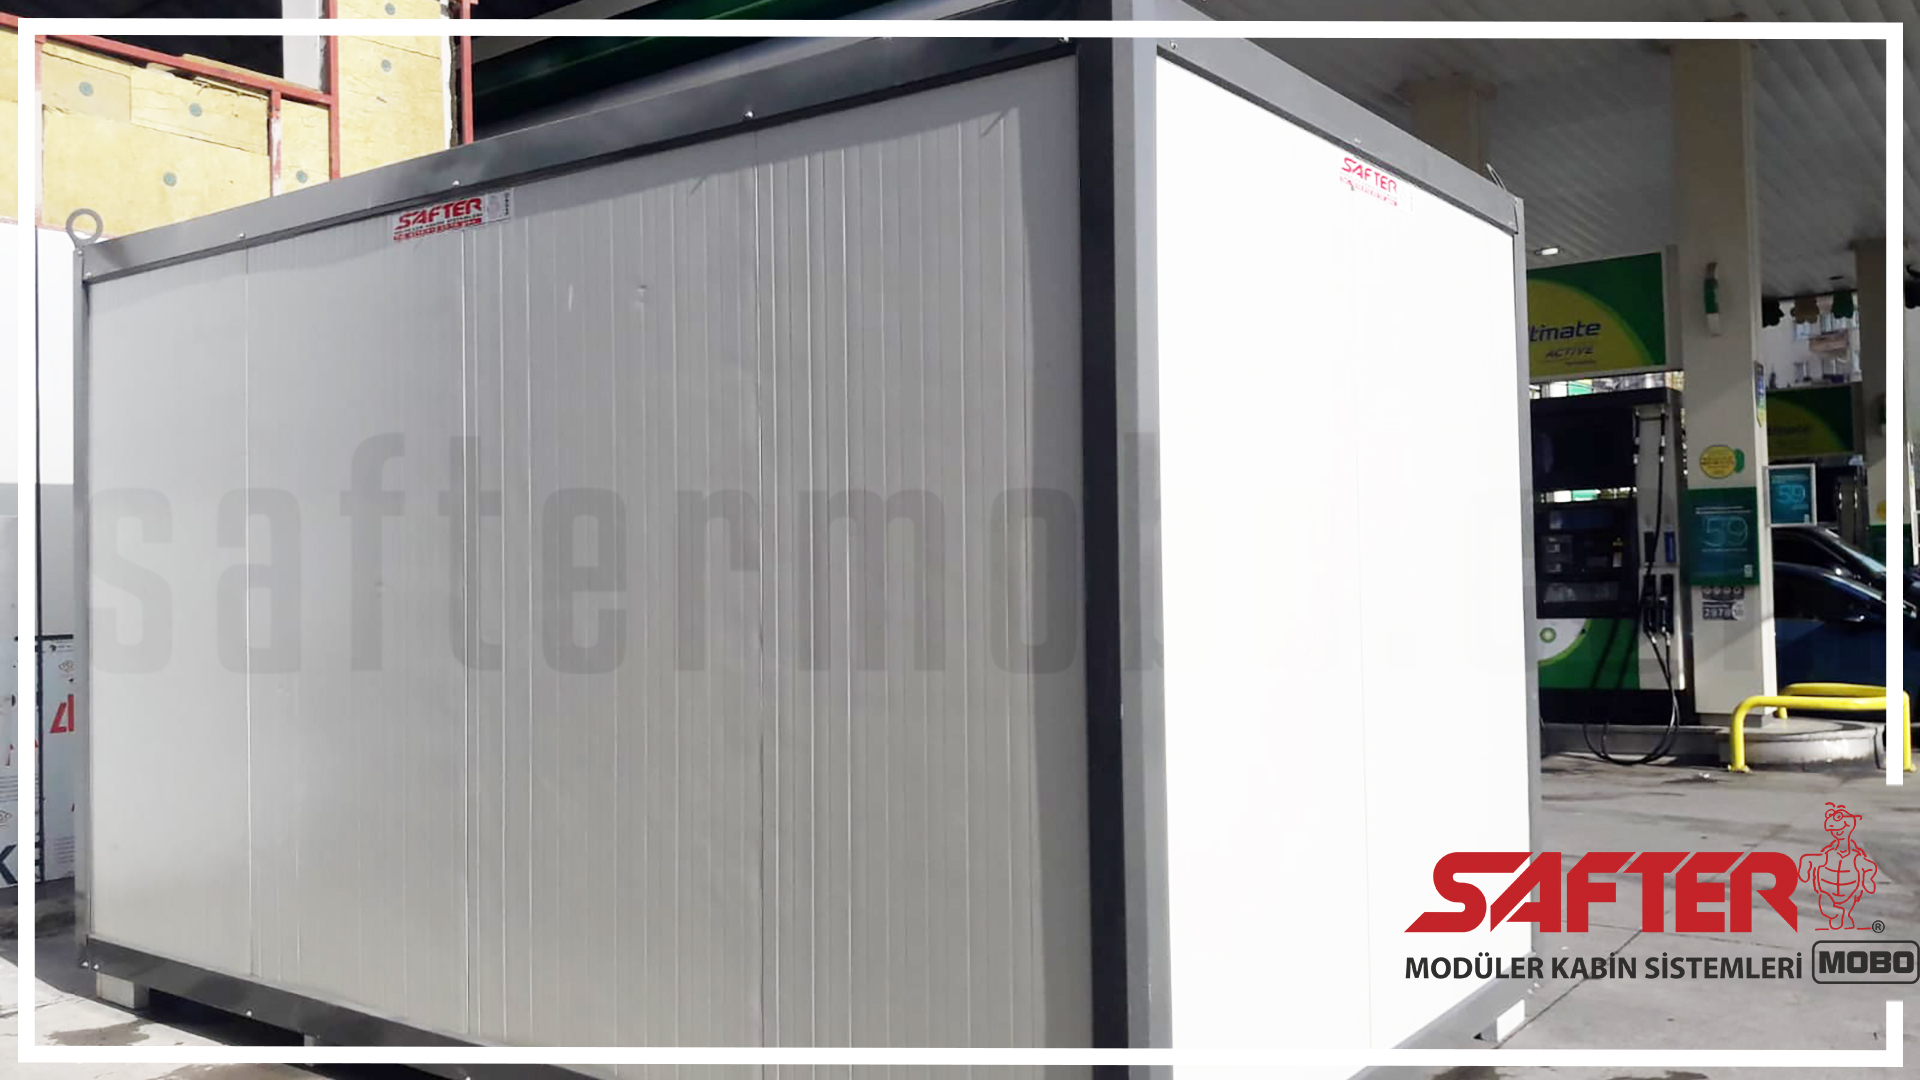 Safter Mobo Panel Kabin Mini Konteyner büyük konteyner ihtiyacına cevap veriyor.